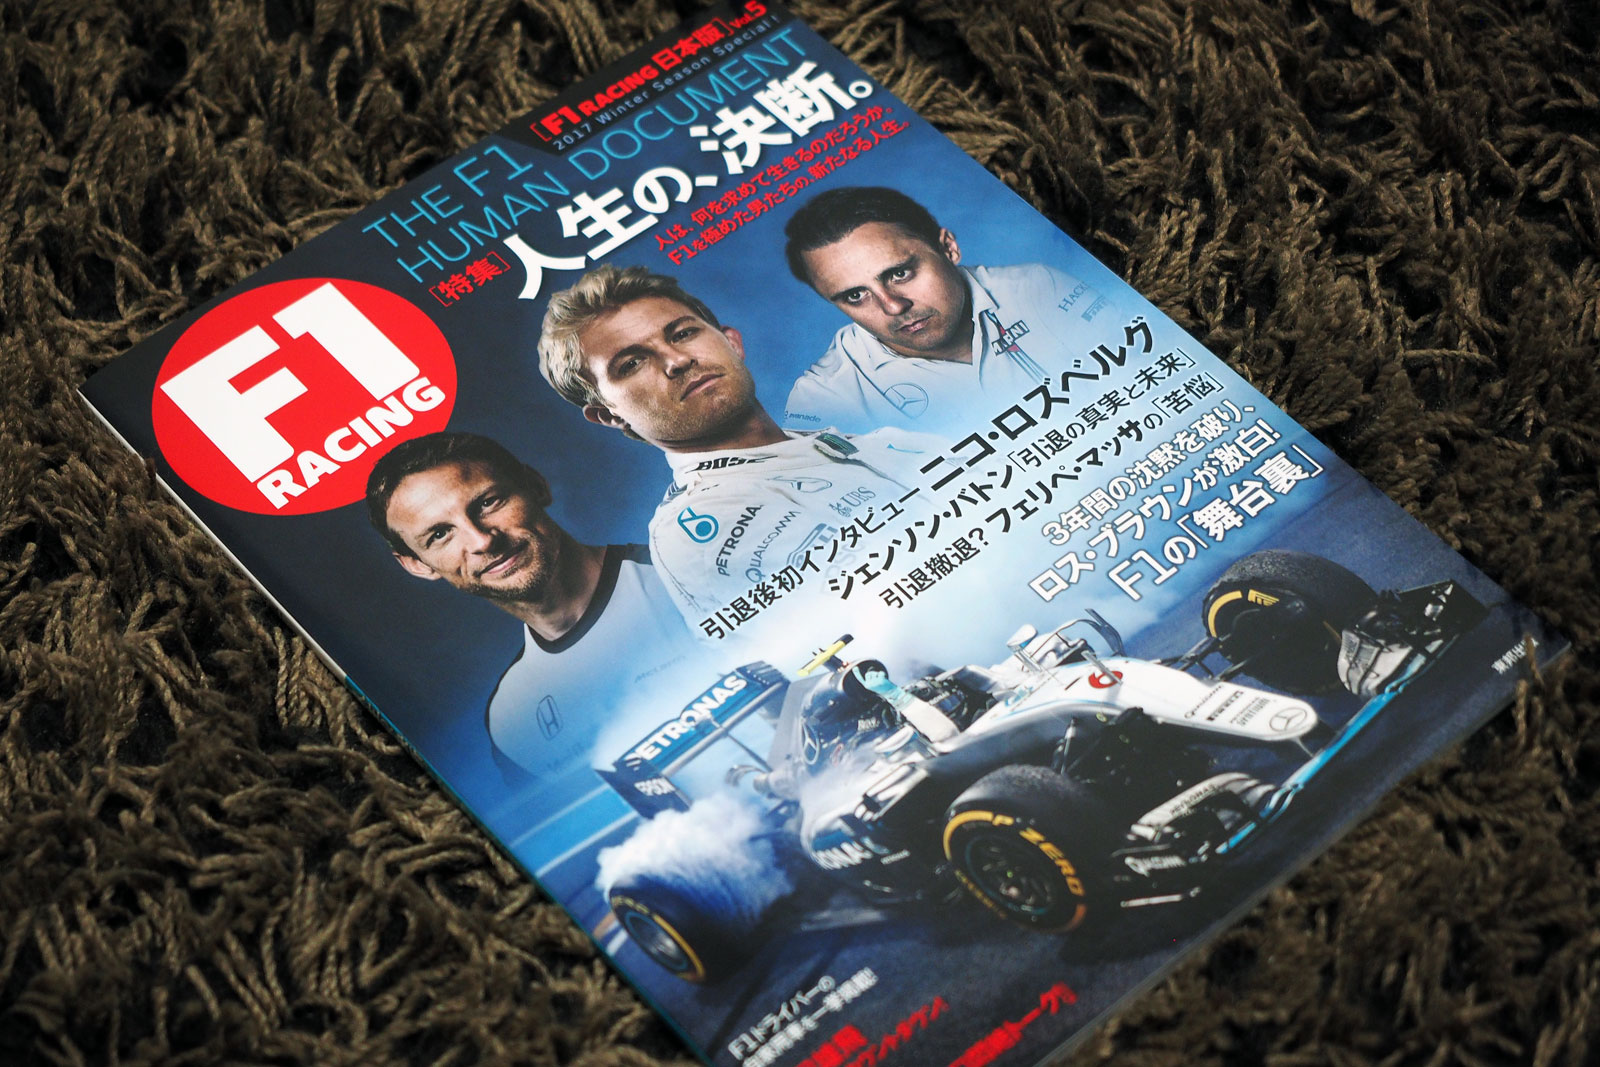 【F1物欲番長】『F1 RACING 日本版 vol.5』は昔の憧れの人？の巻